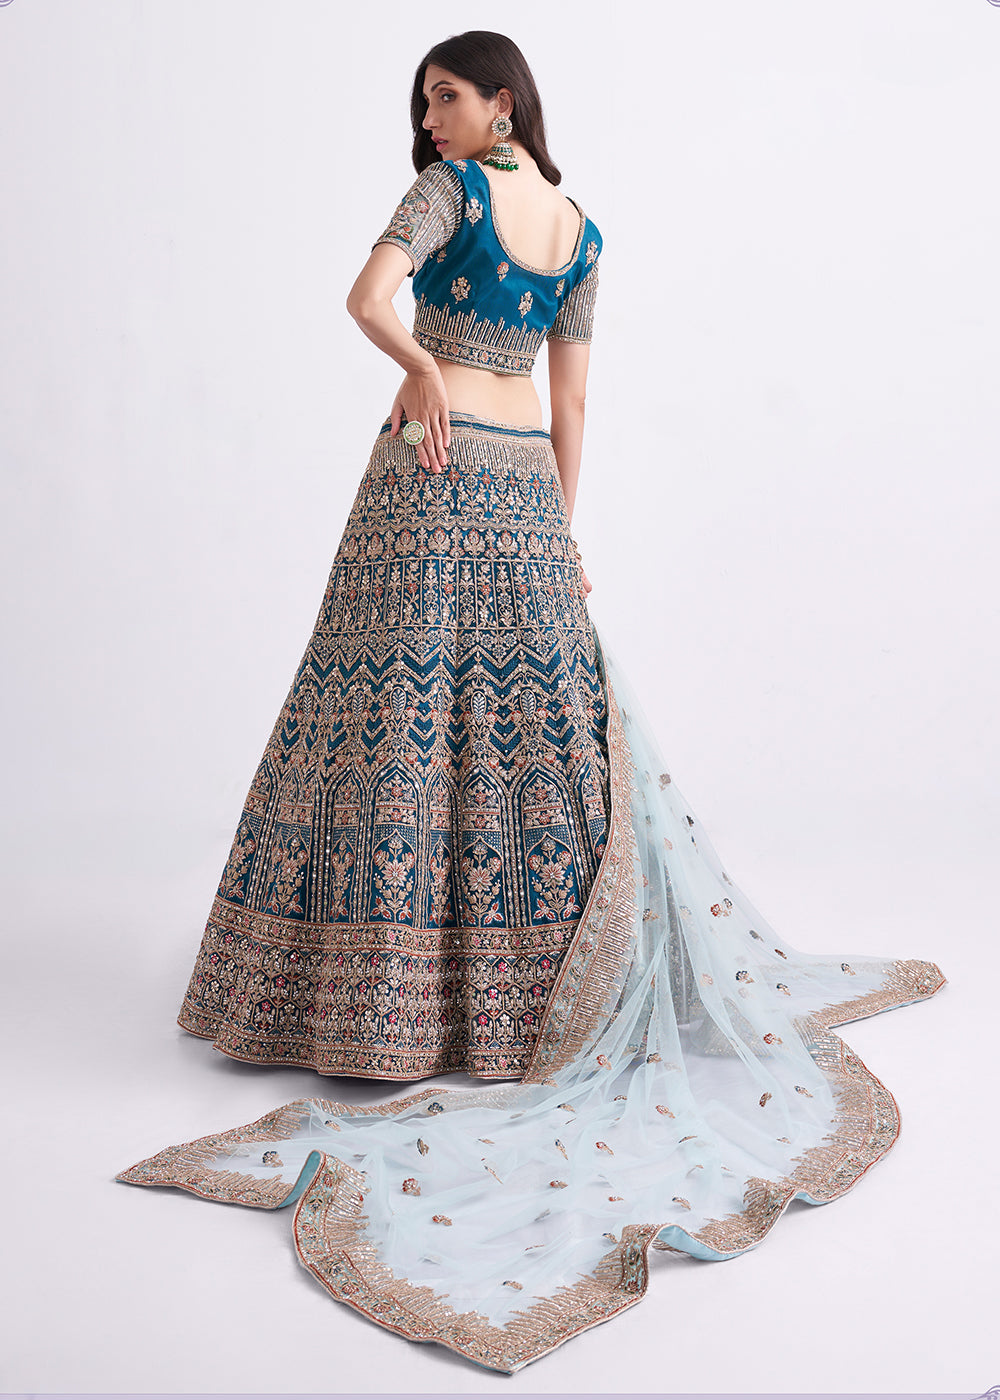 Buy Now Imposing Teal Blue Wedding Style Designer Bridal Lehenga Choli Online in Canada, UK, USA & Worldwide at Empress Clothing. 